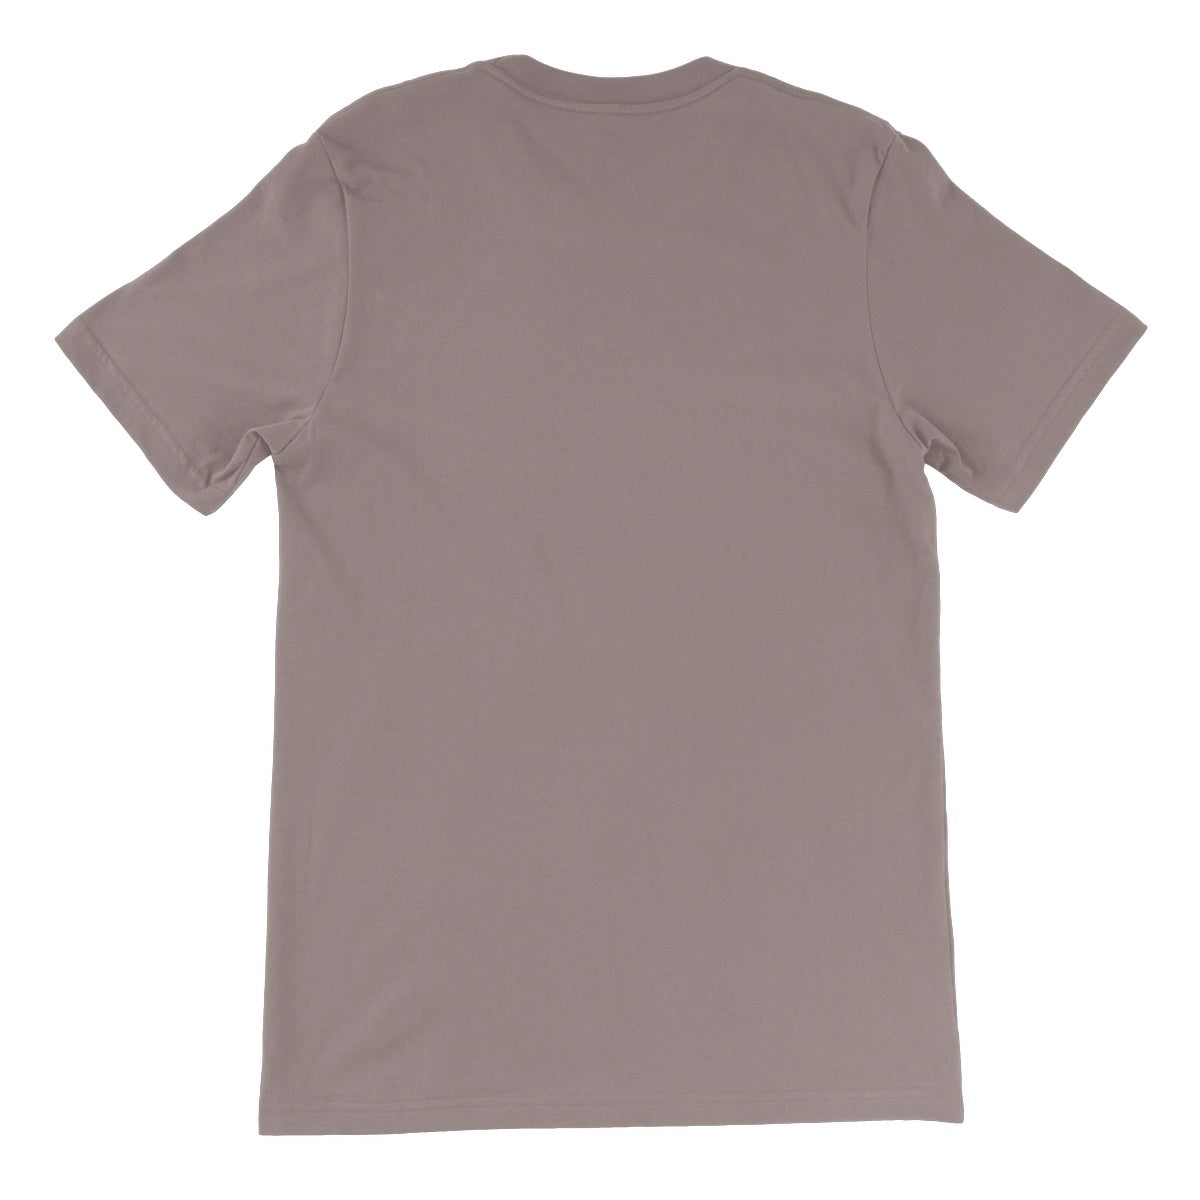 CxE Gimmick Unisex Short Sleeve T-Shirt